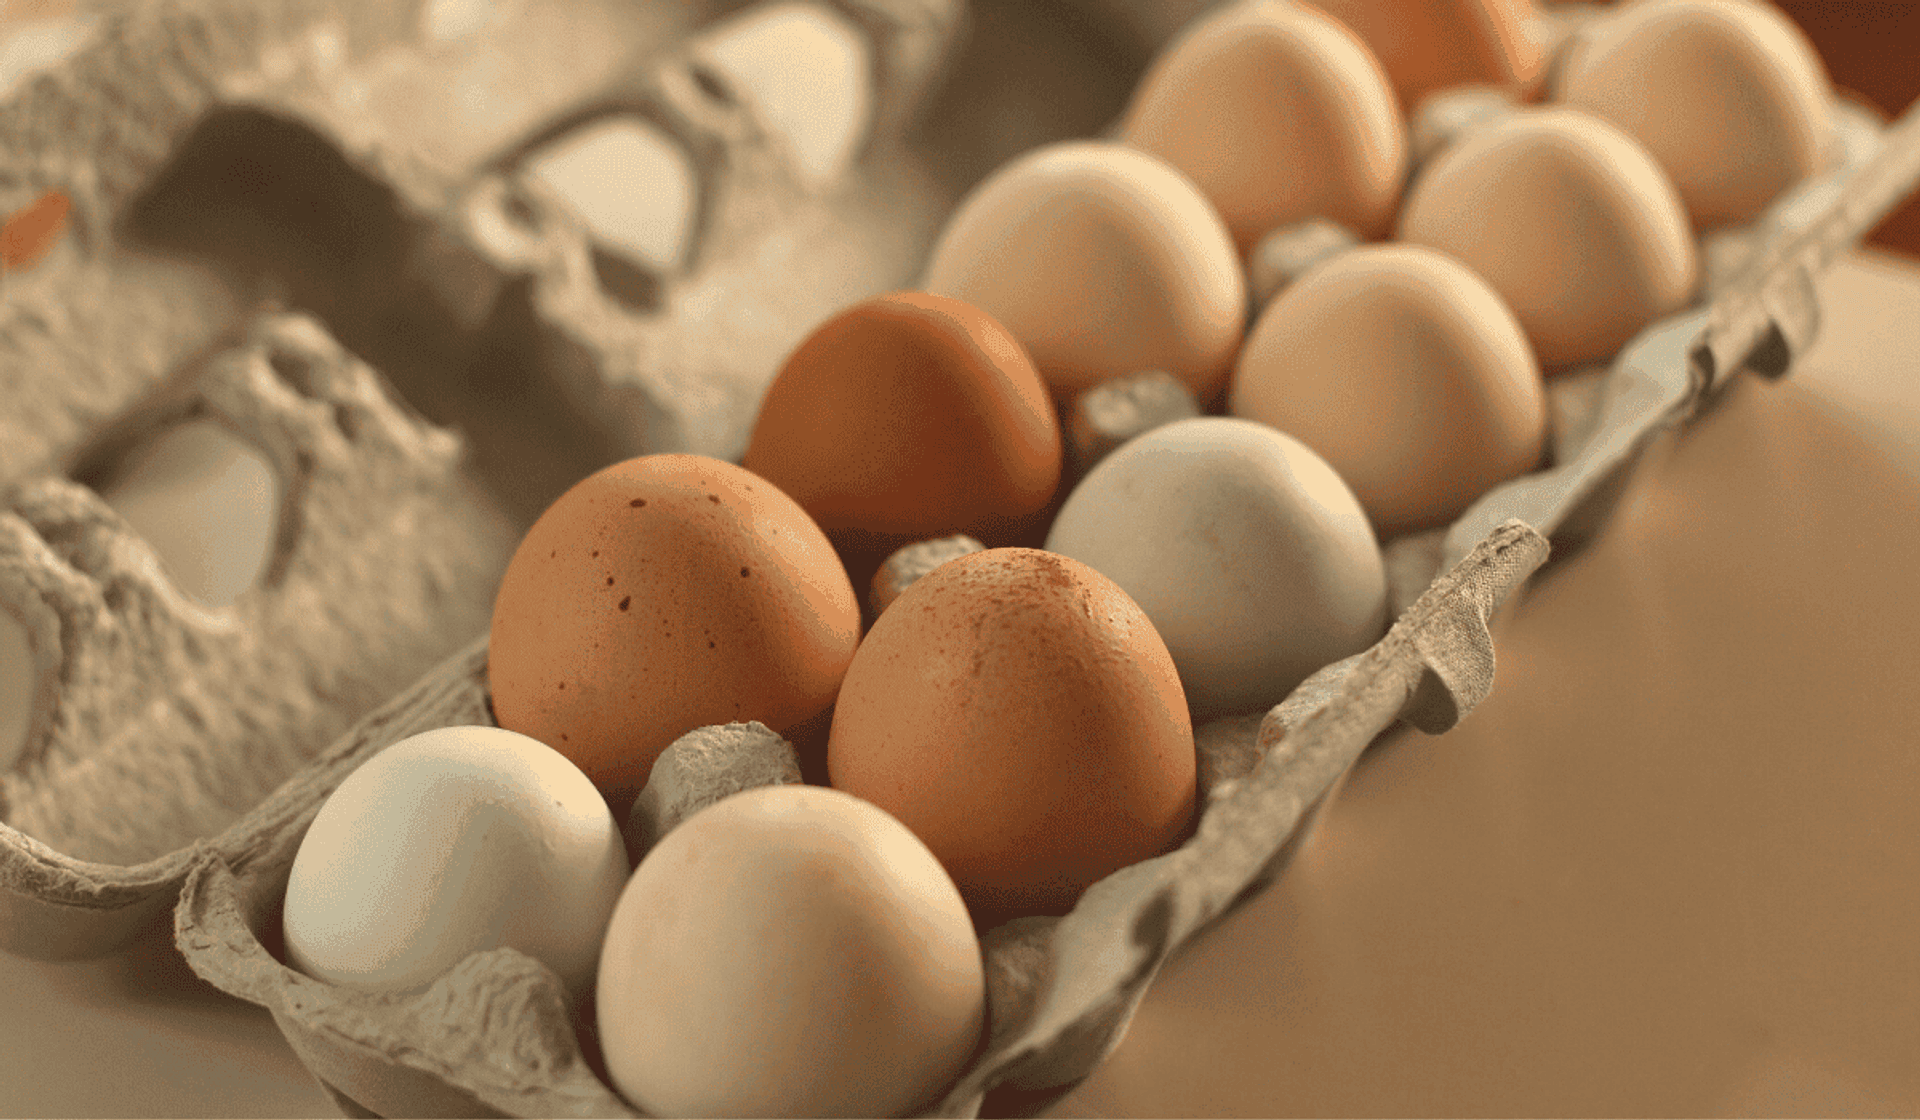 Jak sprawdzić, czy jajka są świeże? 